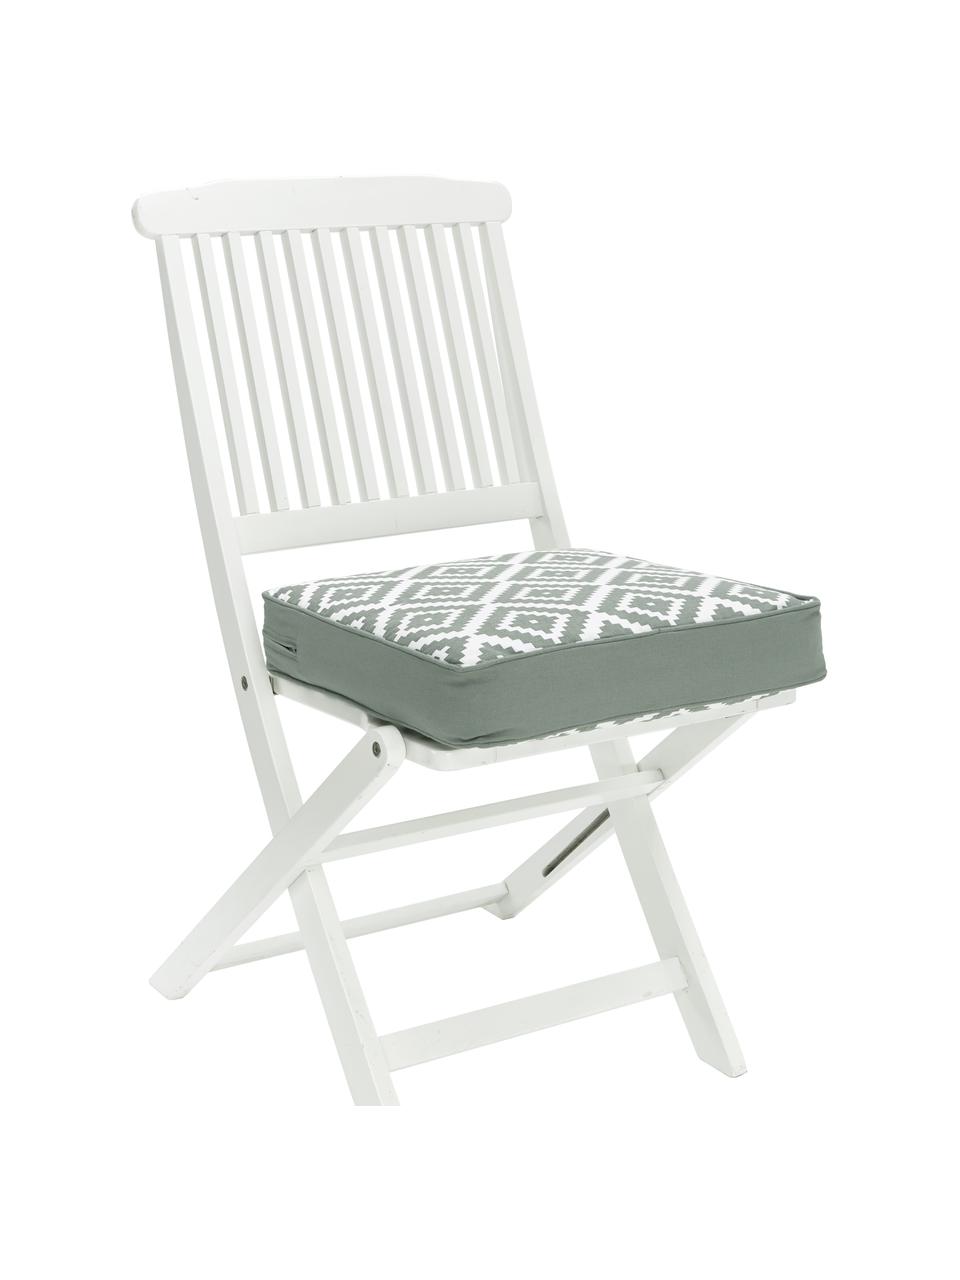 Wysoka poduszka na krzesło Miami, Szałwiowy zielony, biały, S 40 x D 40 cm